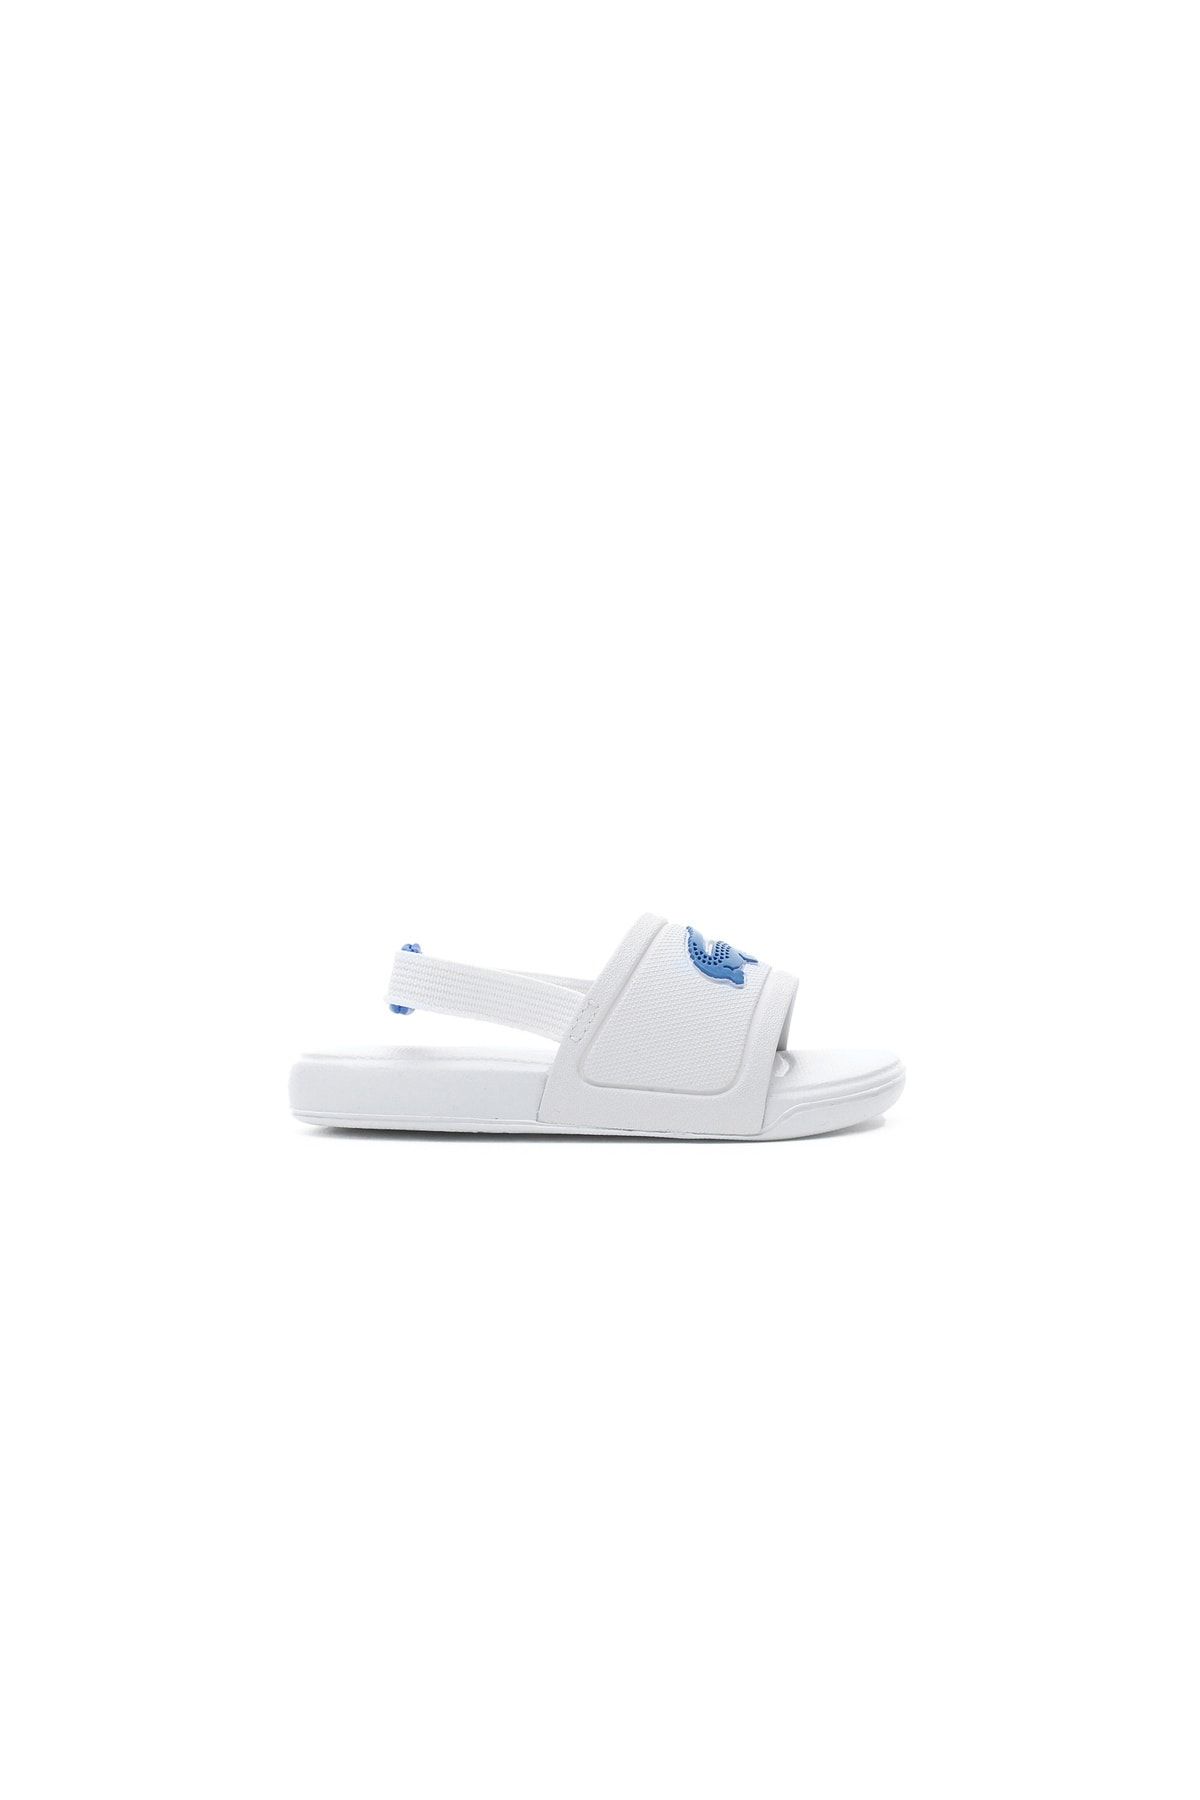 Lacoste L.30 Slide 120 1 Cui Çocuk Timsah Baskılı Beyaz Sandalet